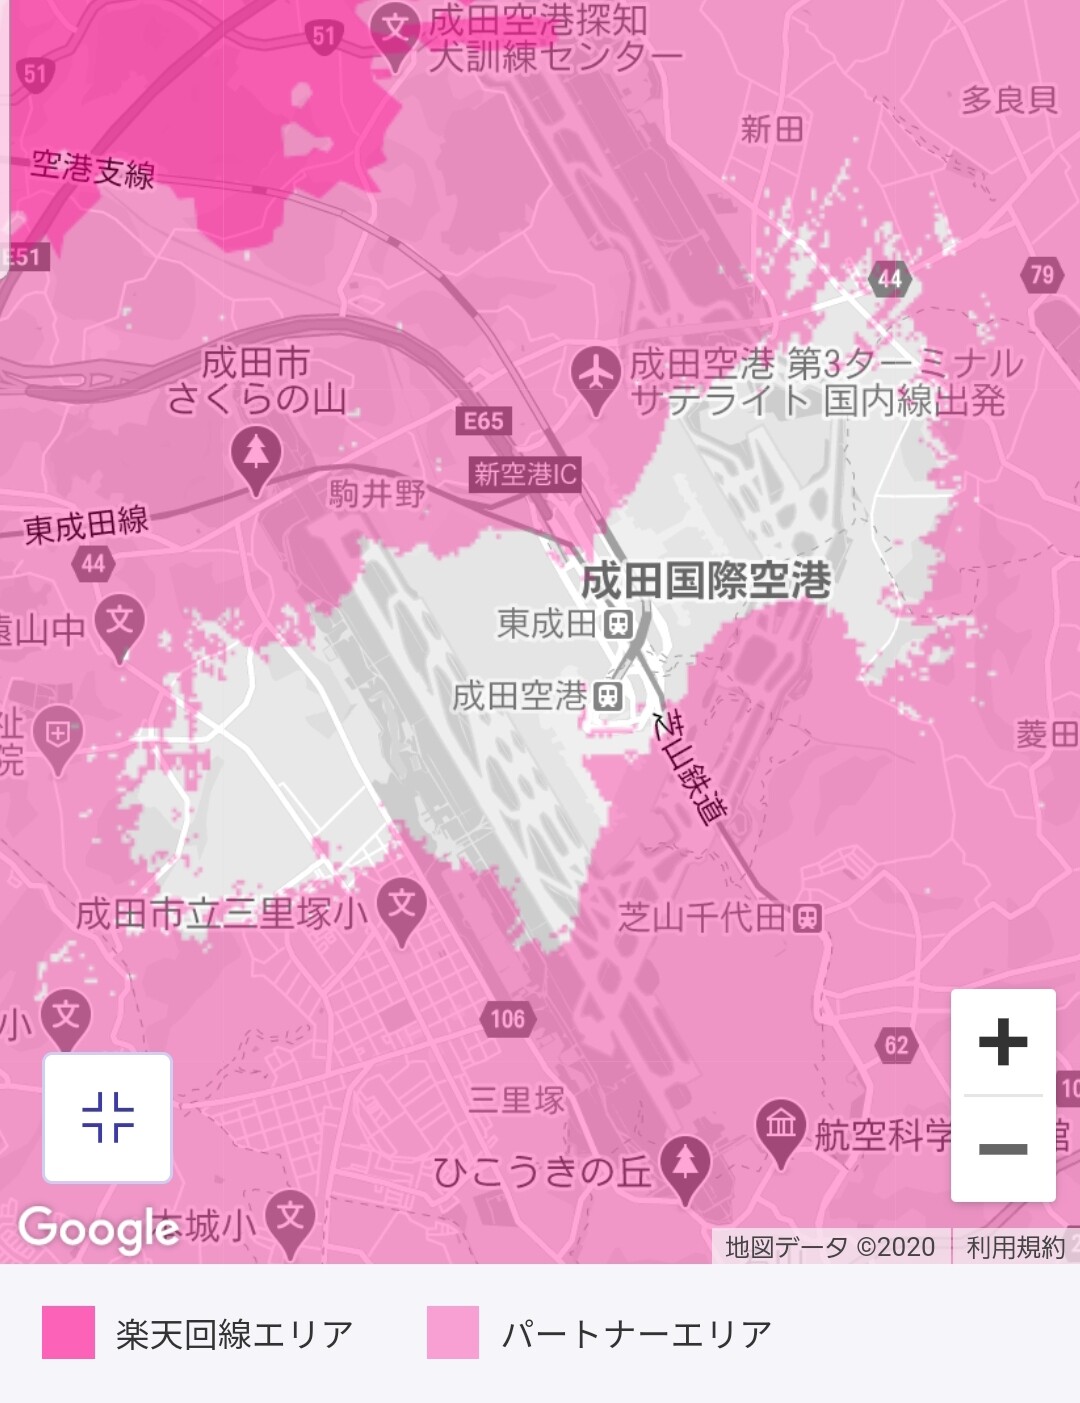 歩ける90年代生まれ 成田空港 と 鎌倉 駅周辺の 楽天モバイル がローミングを切られててなんでかな と感じている Realtek